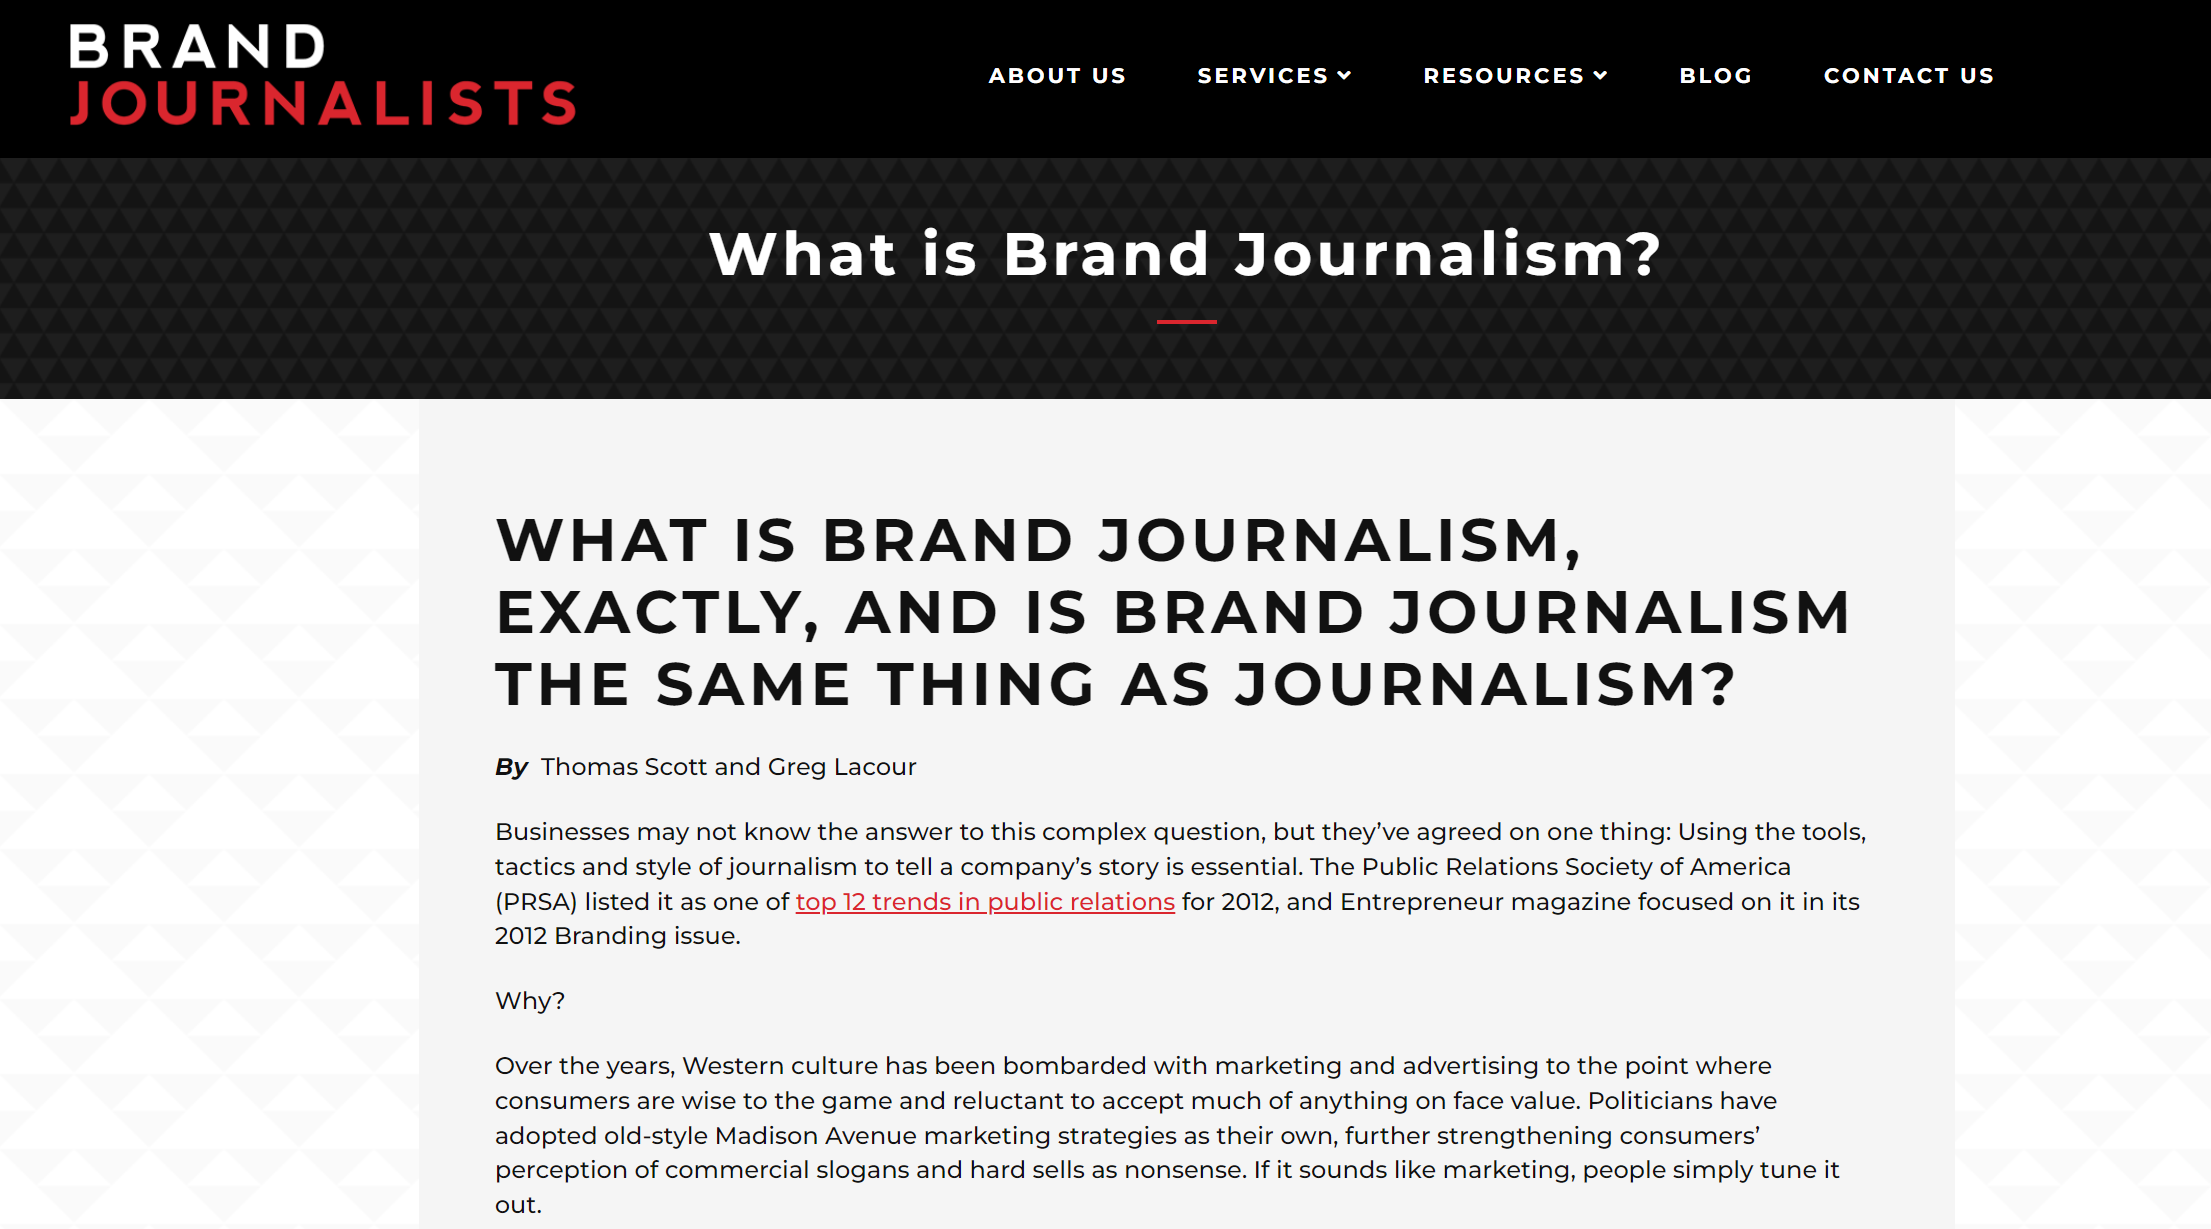 저널리즘과 브랜드 저널리즘은 비슷하지만 다르다. (출처 : BRAND JOURNALISTS)